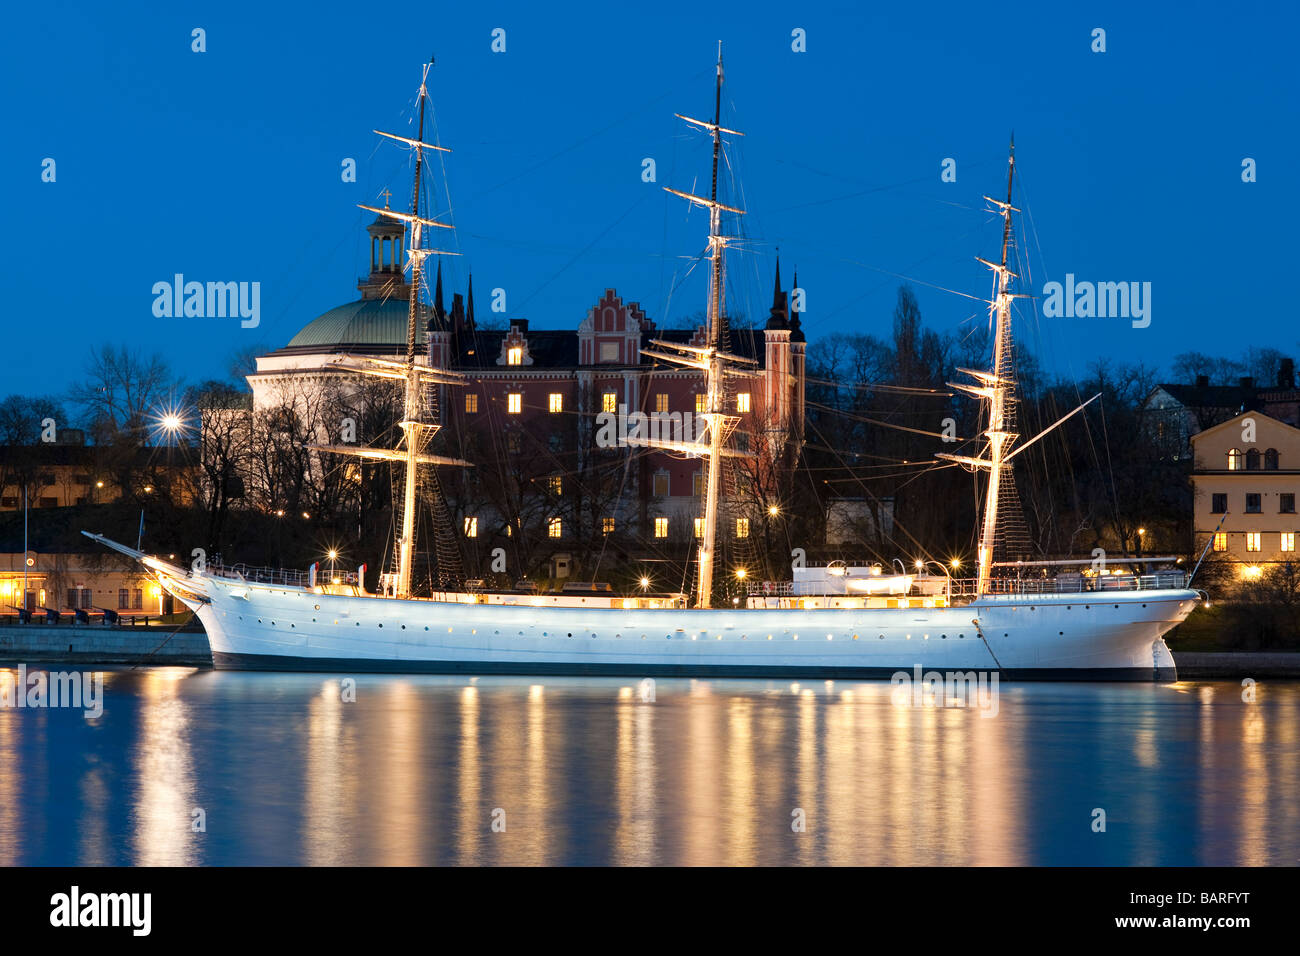 Youth Hostel ship 'Af Chapman' (1888), moored at Skeppsholmen, Stockholm, Sweden. Stock Photo